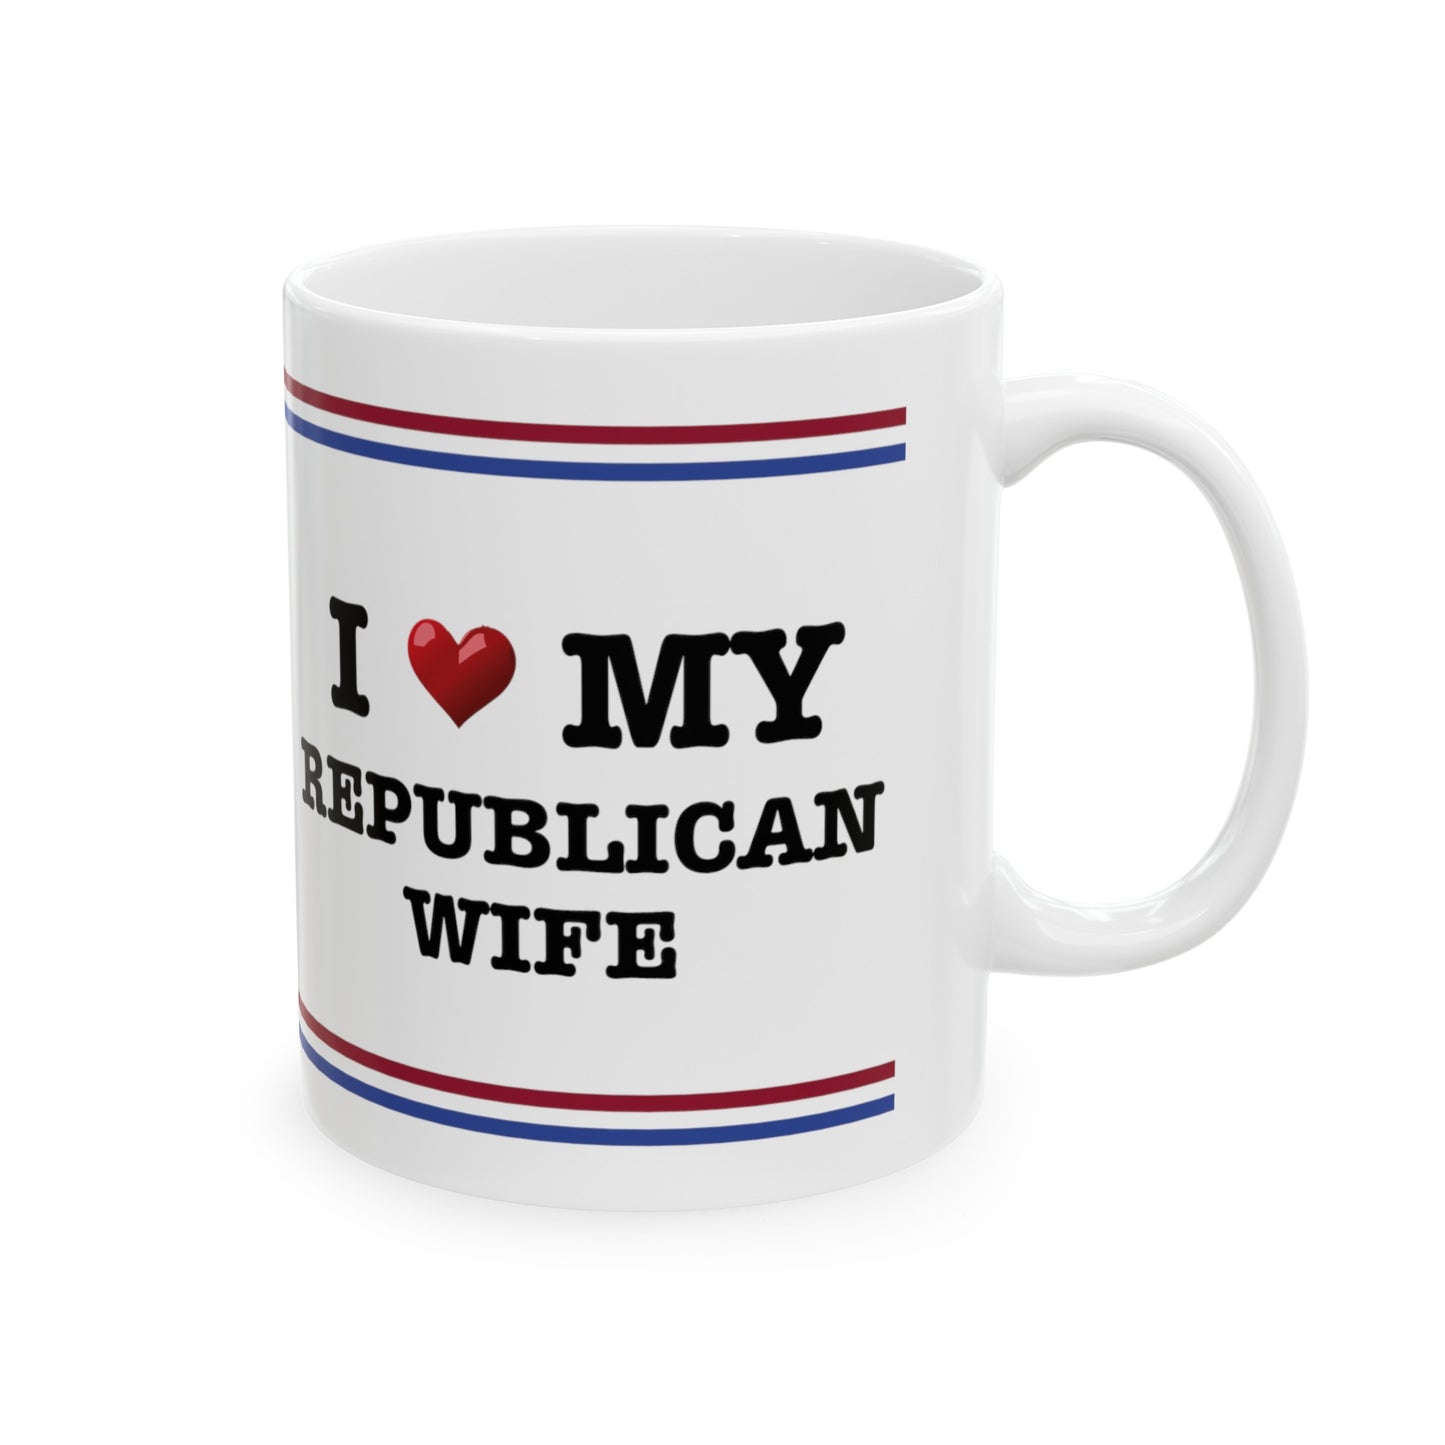 "I HEART MY WIFE" Mug